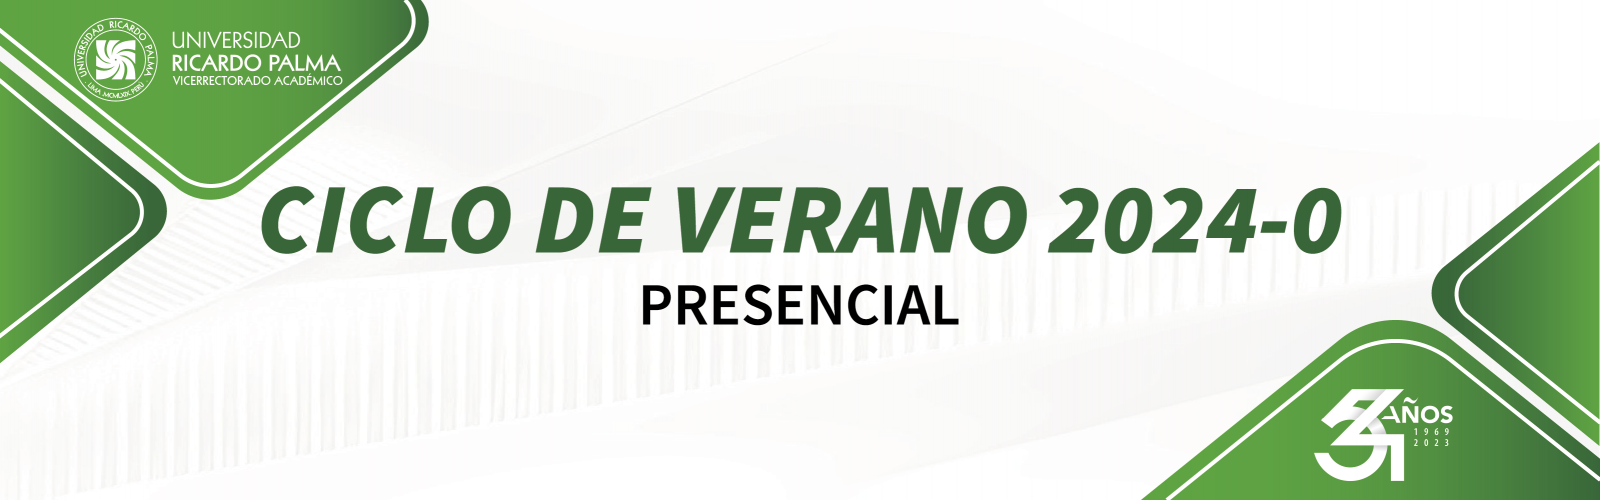 CICLO VERANO 2024-0 - PRESENCIAL